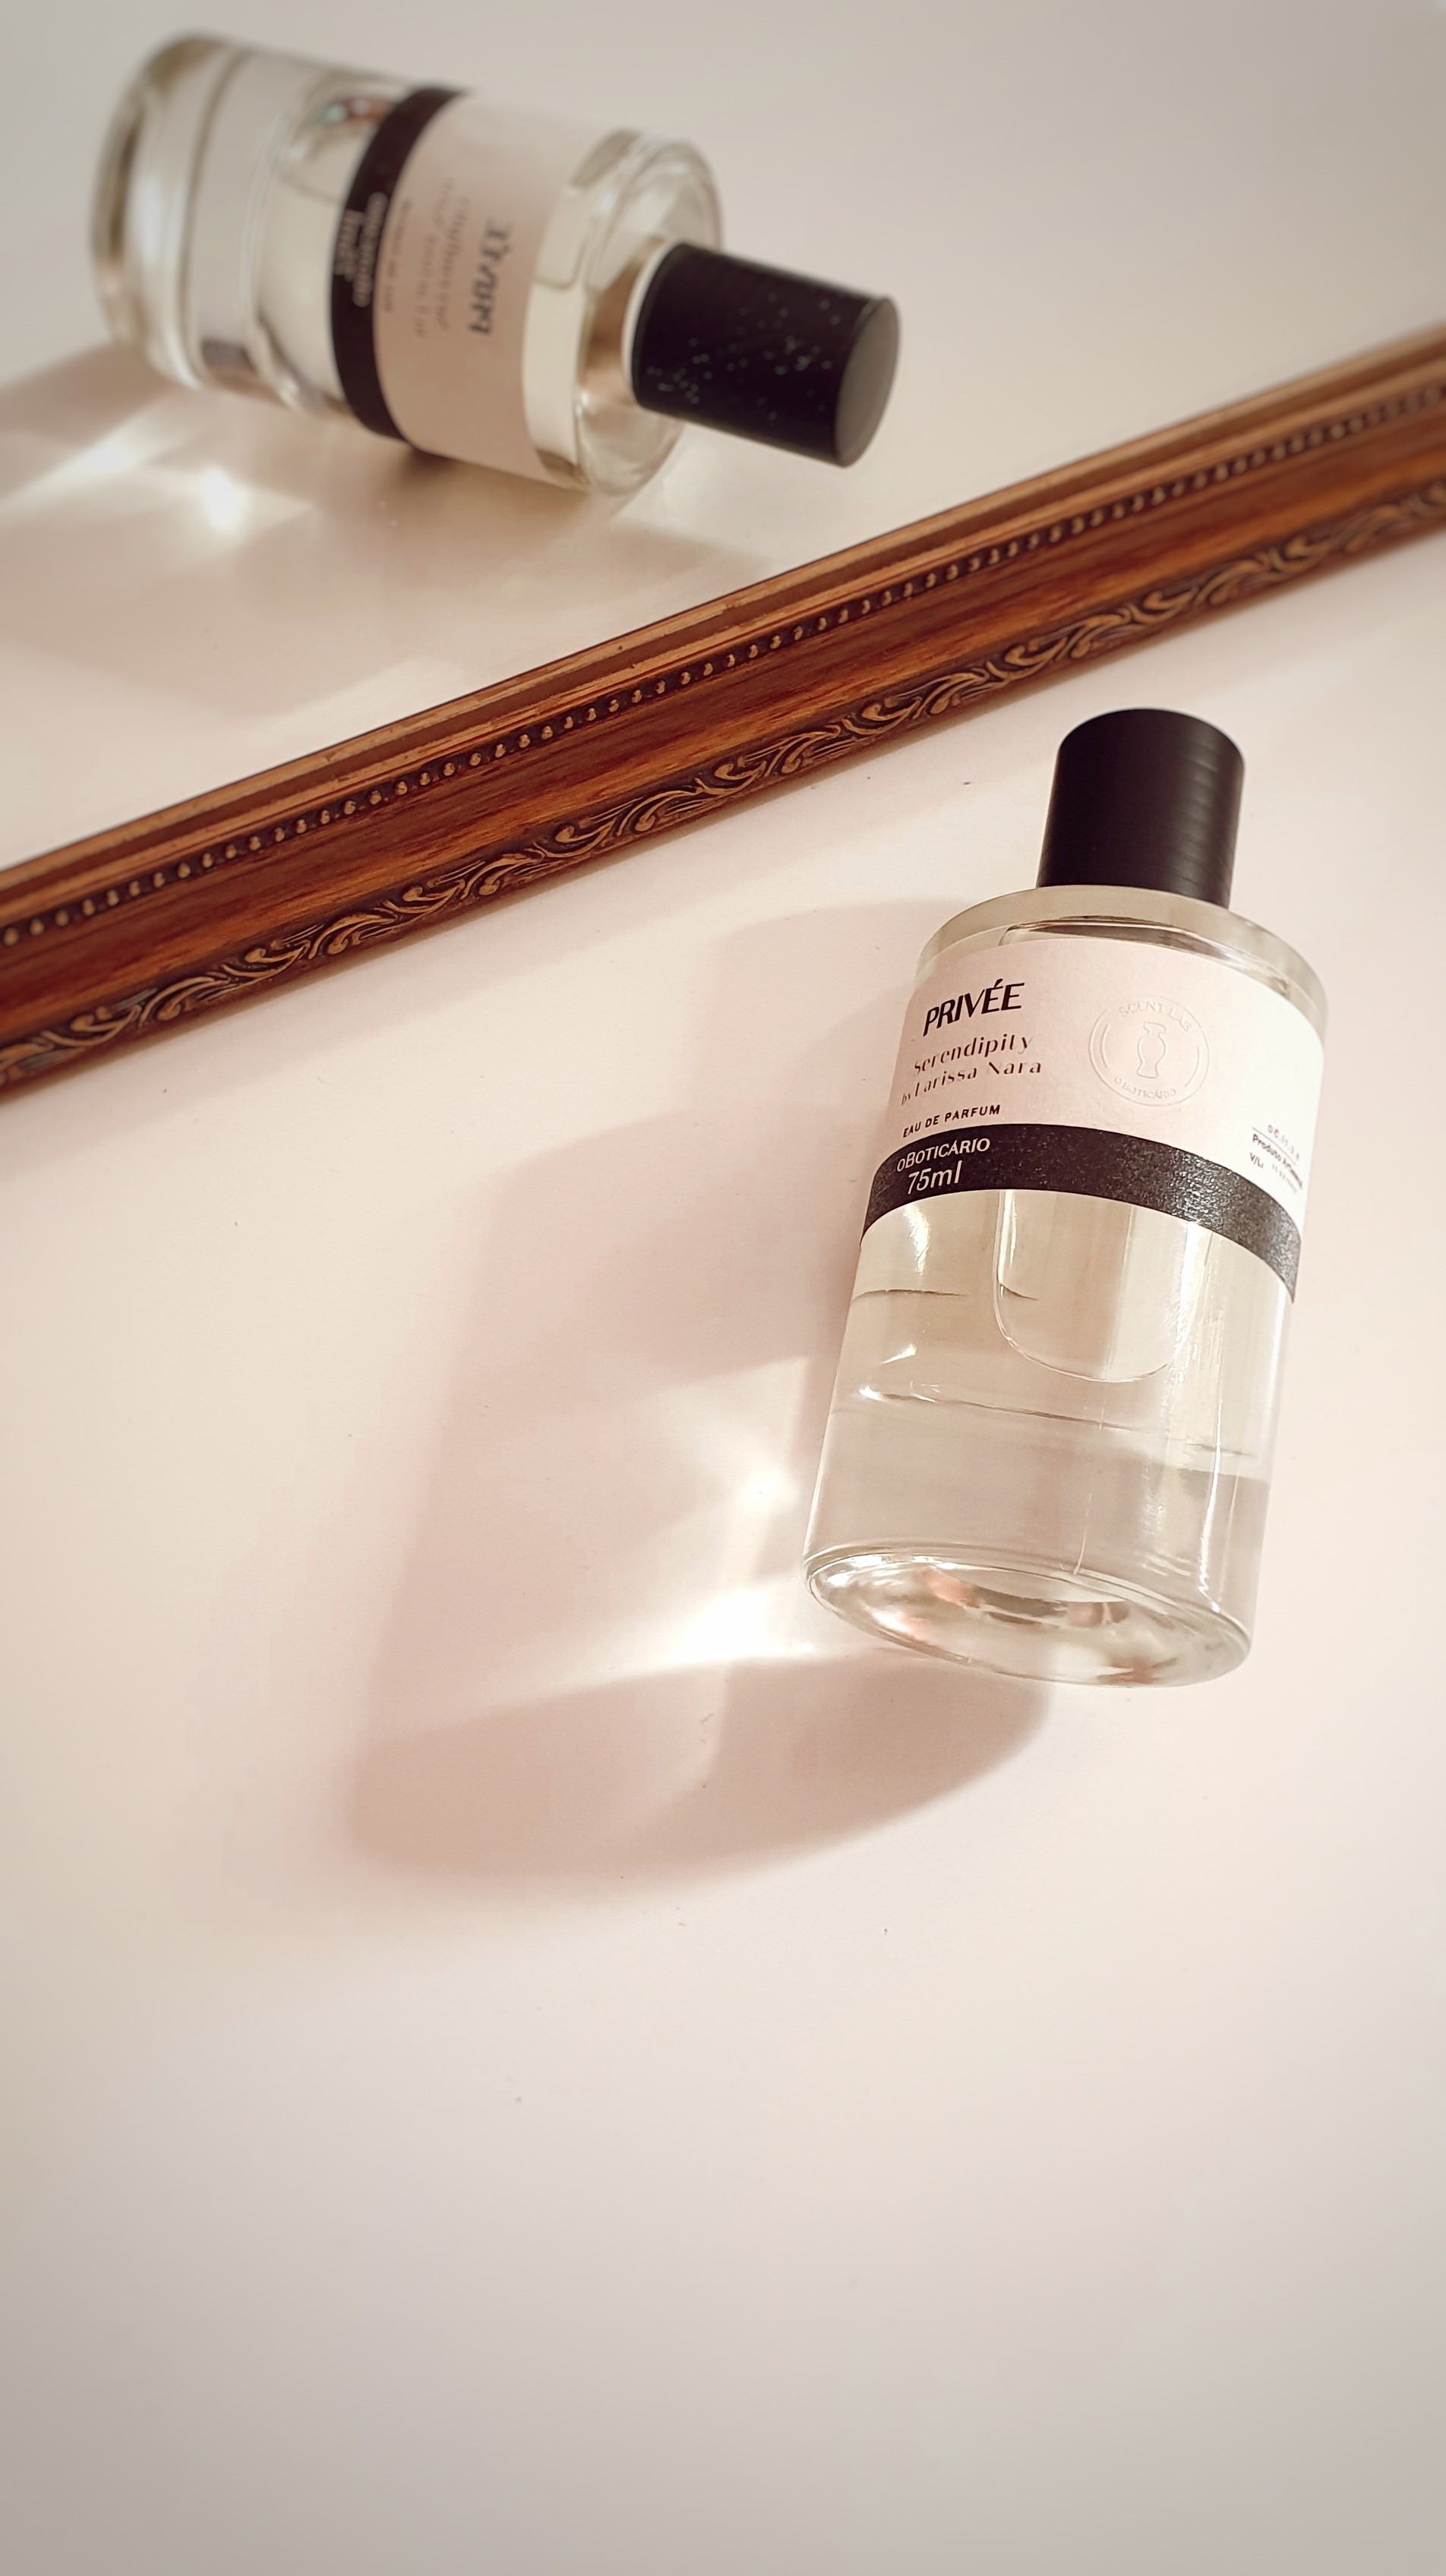 Ama perfume? Veja como criar uma fragrância exclusiva e personalizada  (Foto: Larissa Nara)